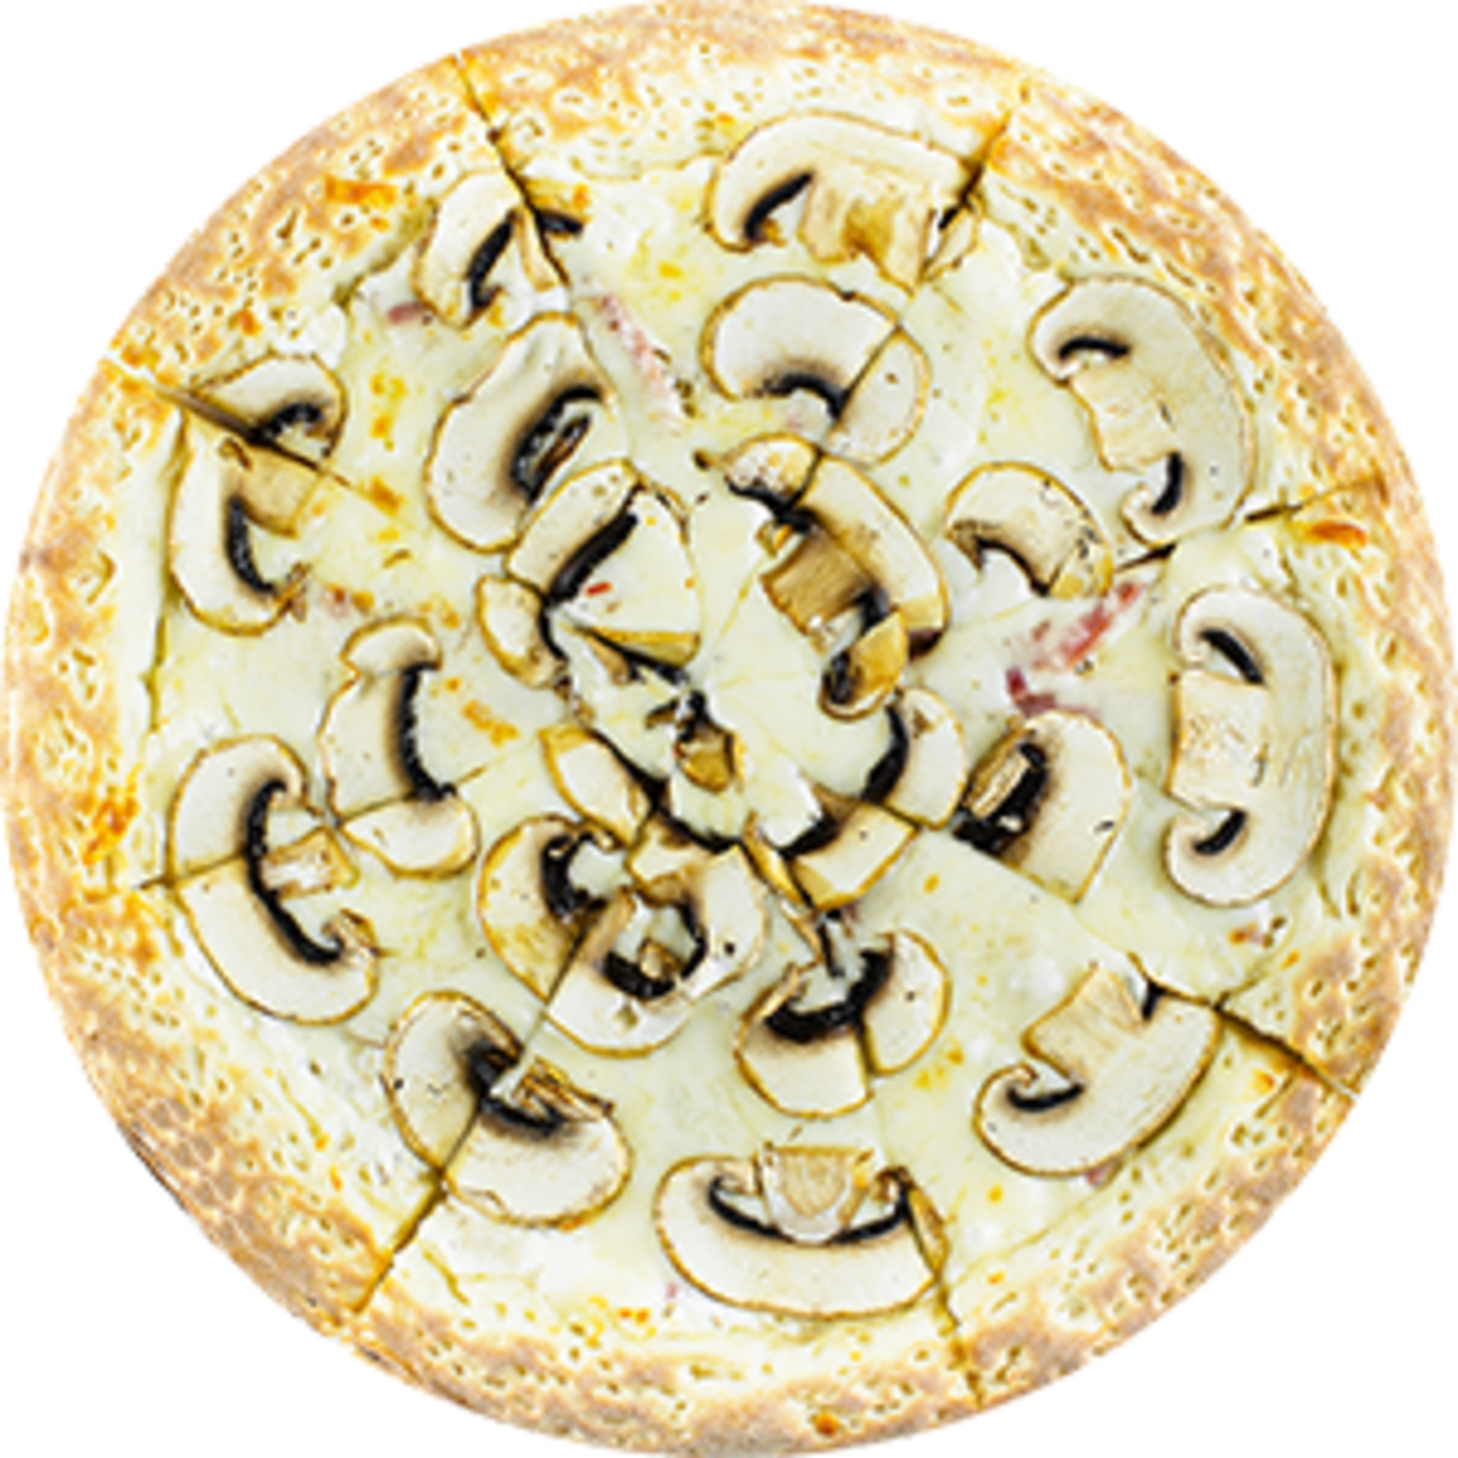 пицца грибная сливочный соус фото 43